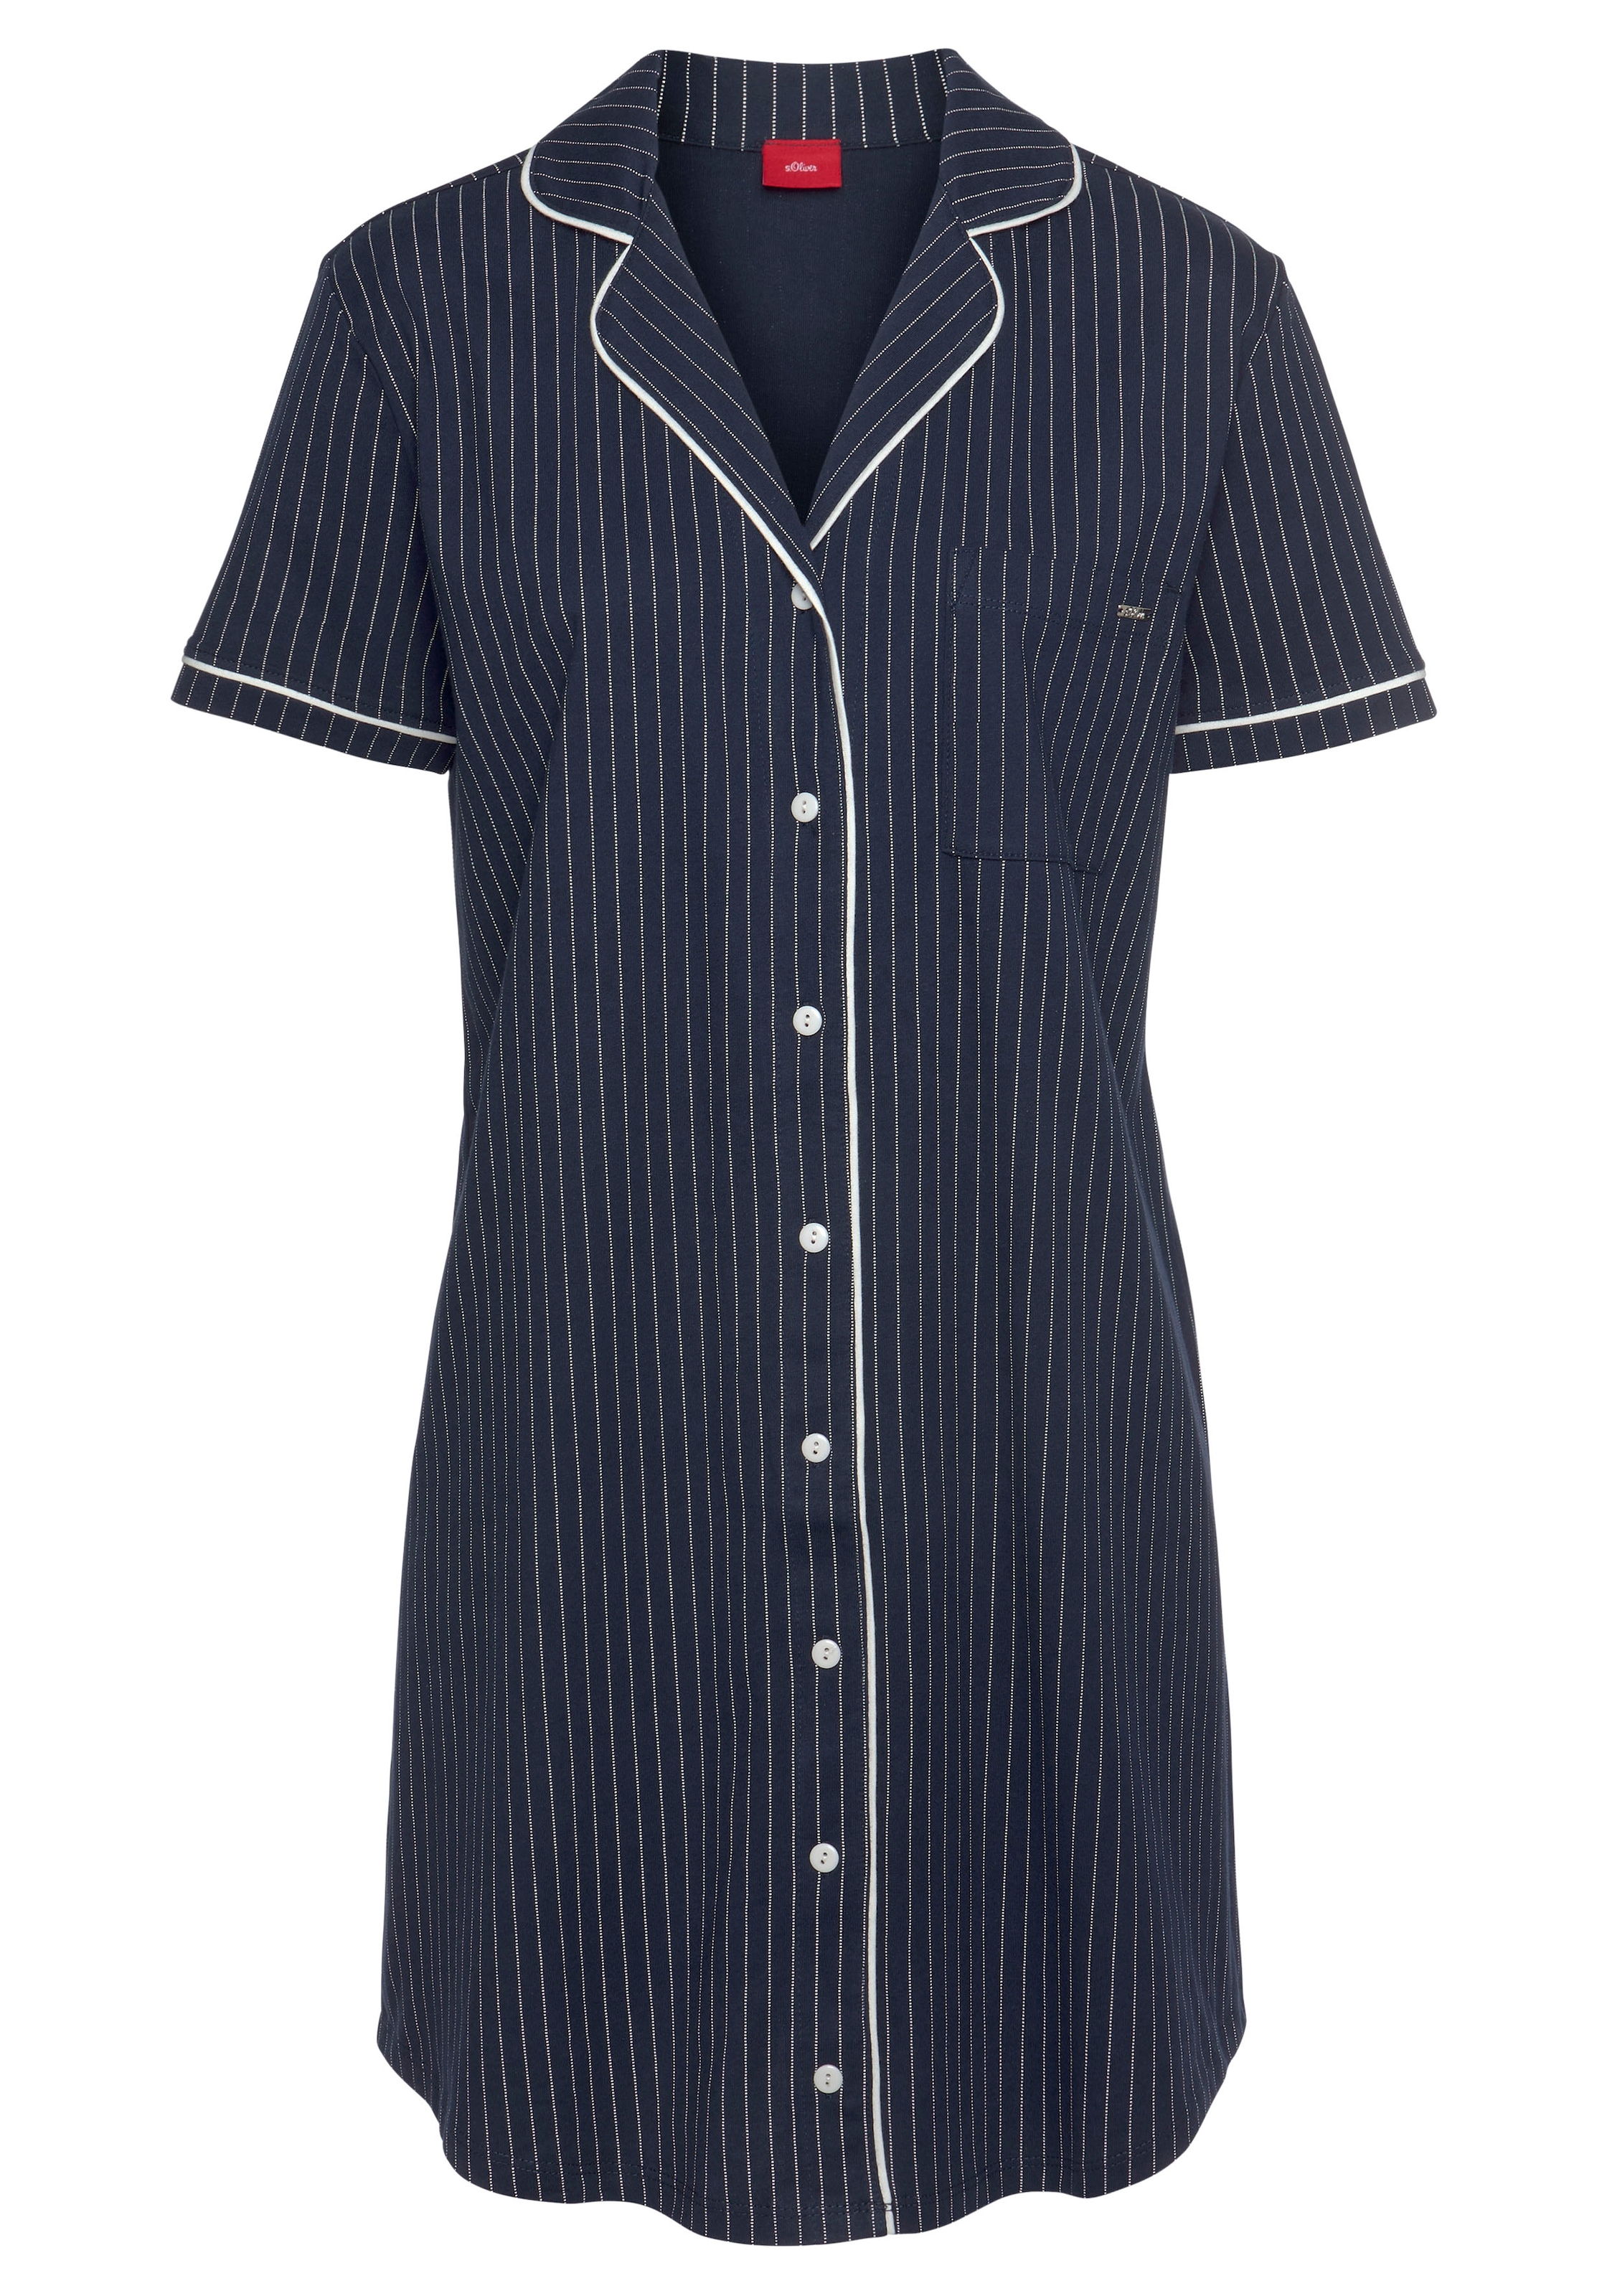 s.Oliver Nachthemd, mit aufgesetzter Brusttasche » LASCANA | Bademode,  Unterwäsche & Lingerie online kaufen